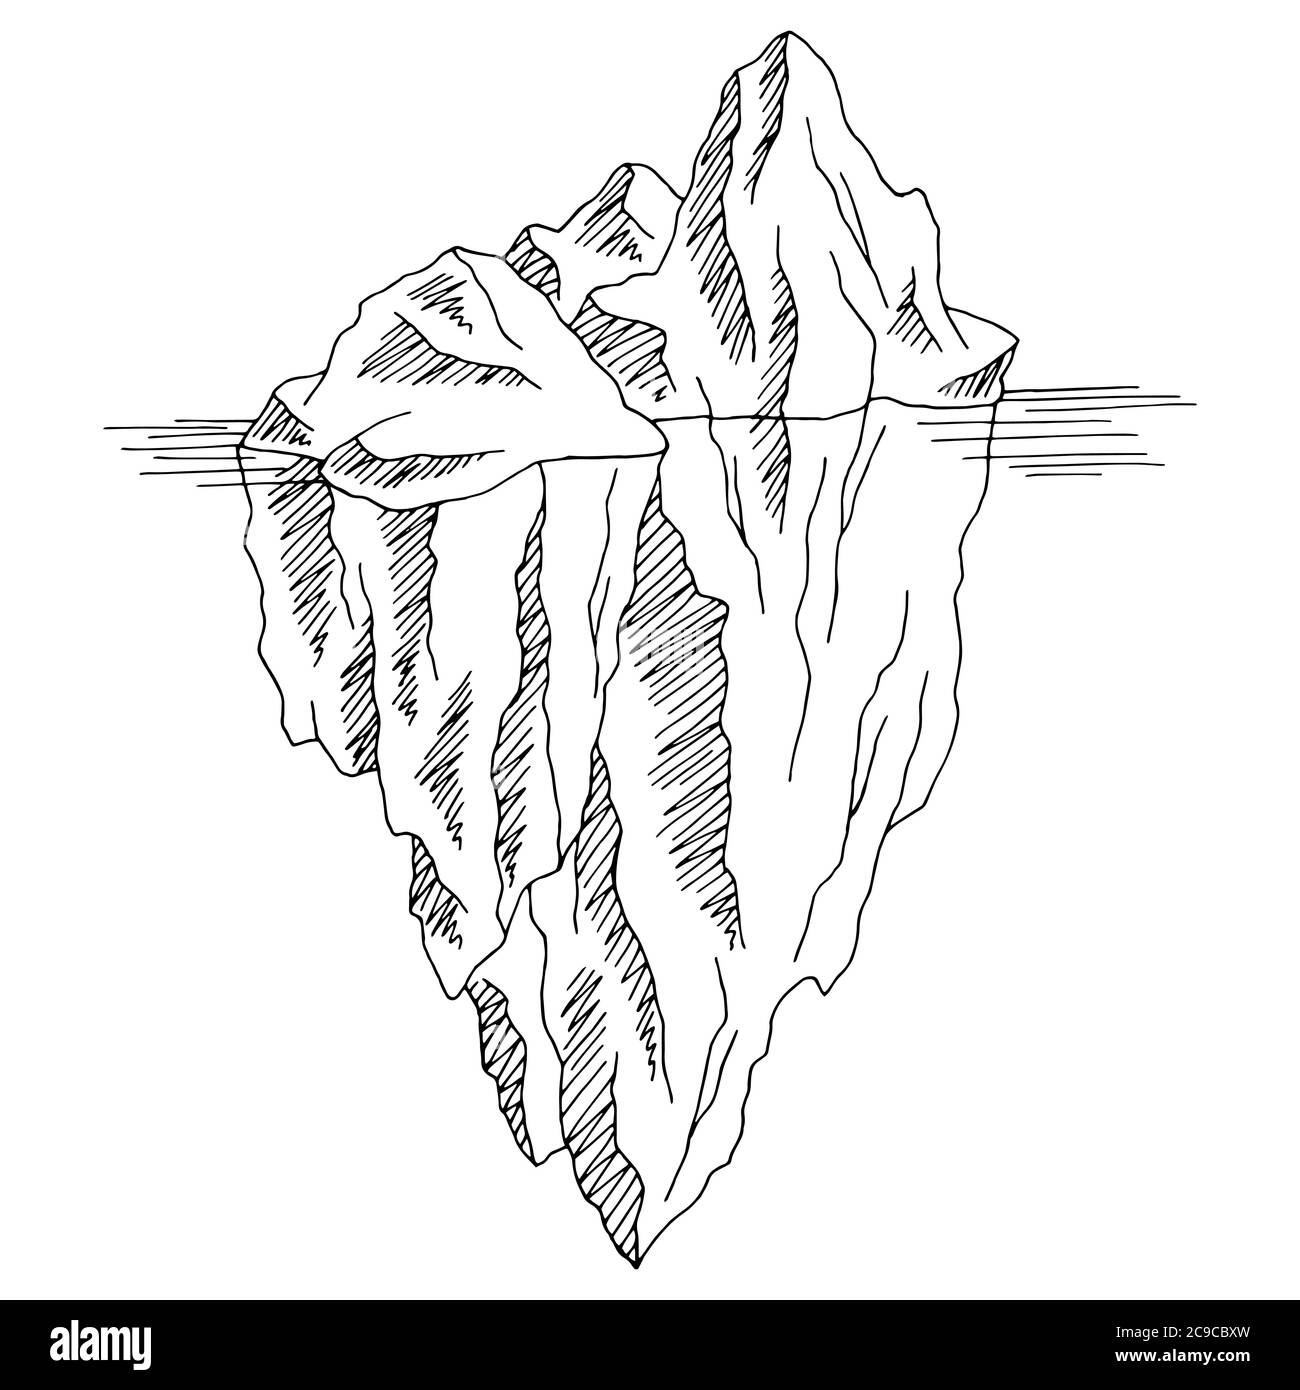 Vecteur d'illustration d'esquisse isolé noir blanc du graphique iceberg Illustration de Vecteur